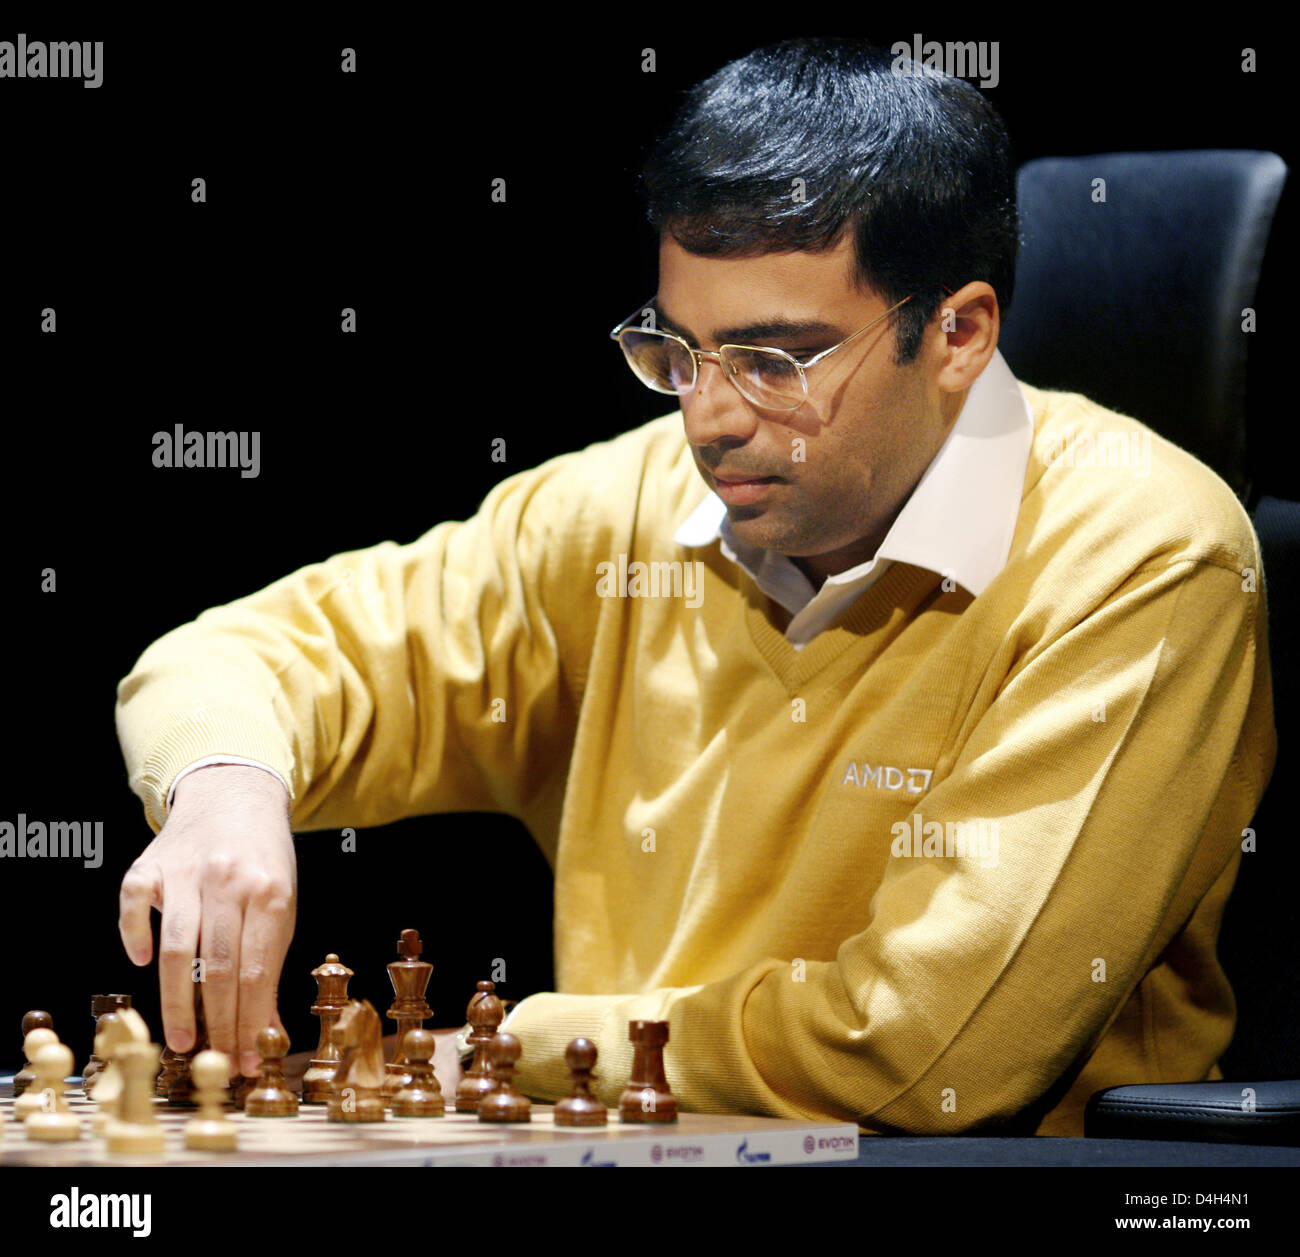 Schach-Großmeister Viswanathan Anand (R) von Indien und Vladimir Kramnik  (nicht abgebildet) der Russischen Föderation Handschlag vor ihrem achten  Spiel in der Schach-Weltmeisterschaft in Bonn, Deutschland, 24. Oktober  2008. Anand führt 5: 2